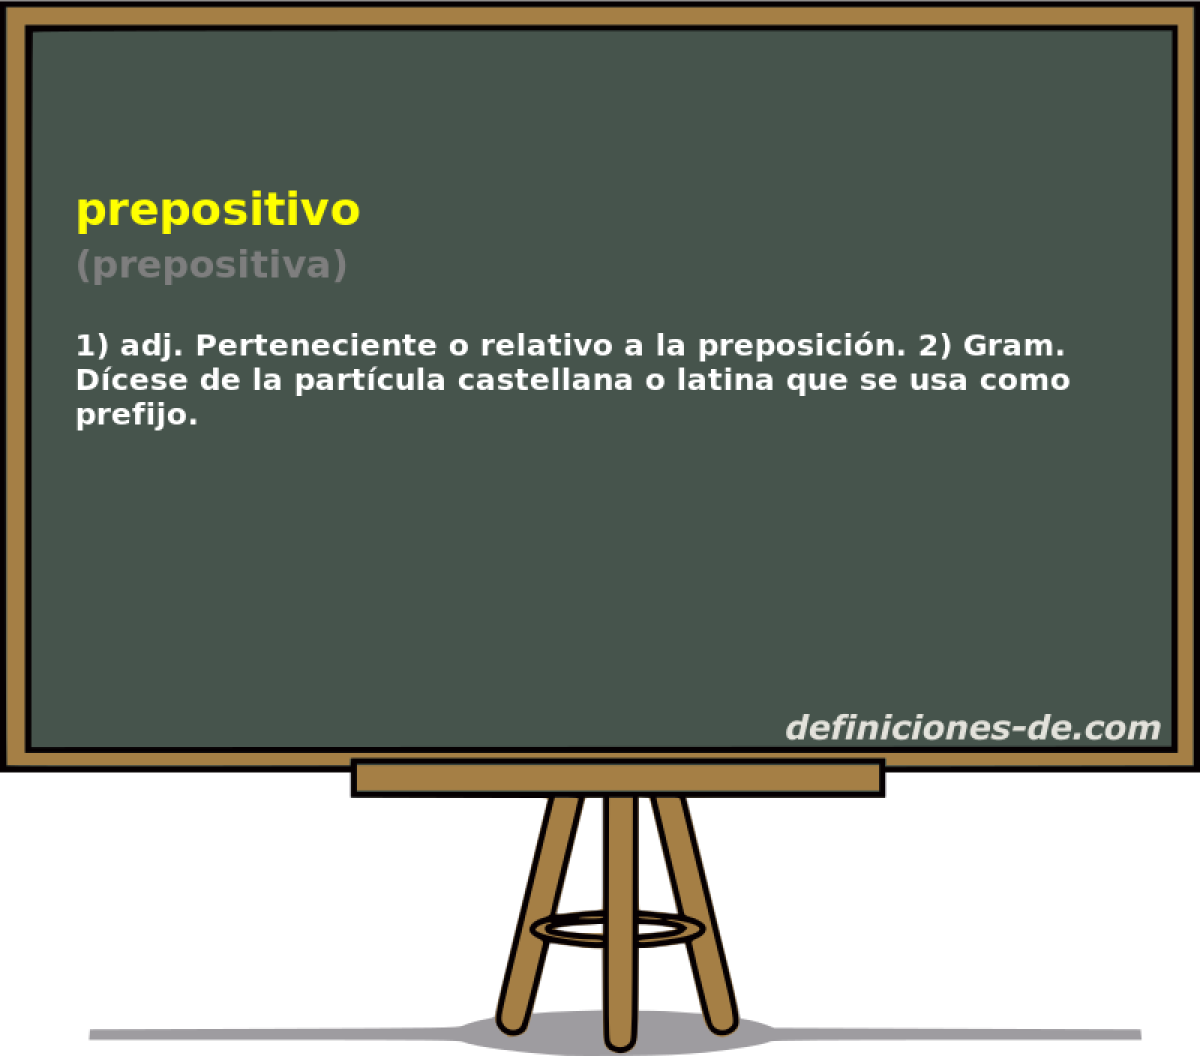 prepositivo (prepositiva)